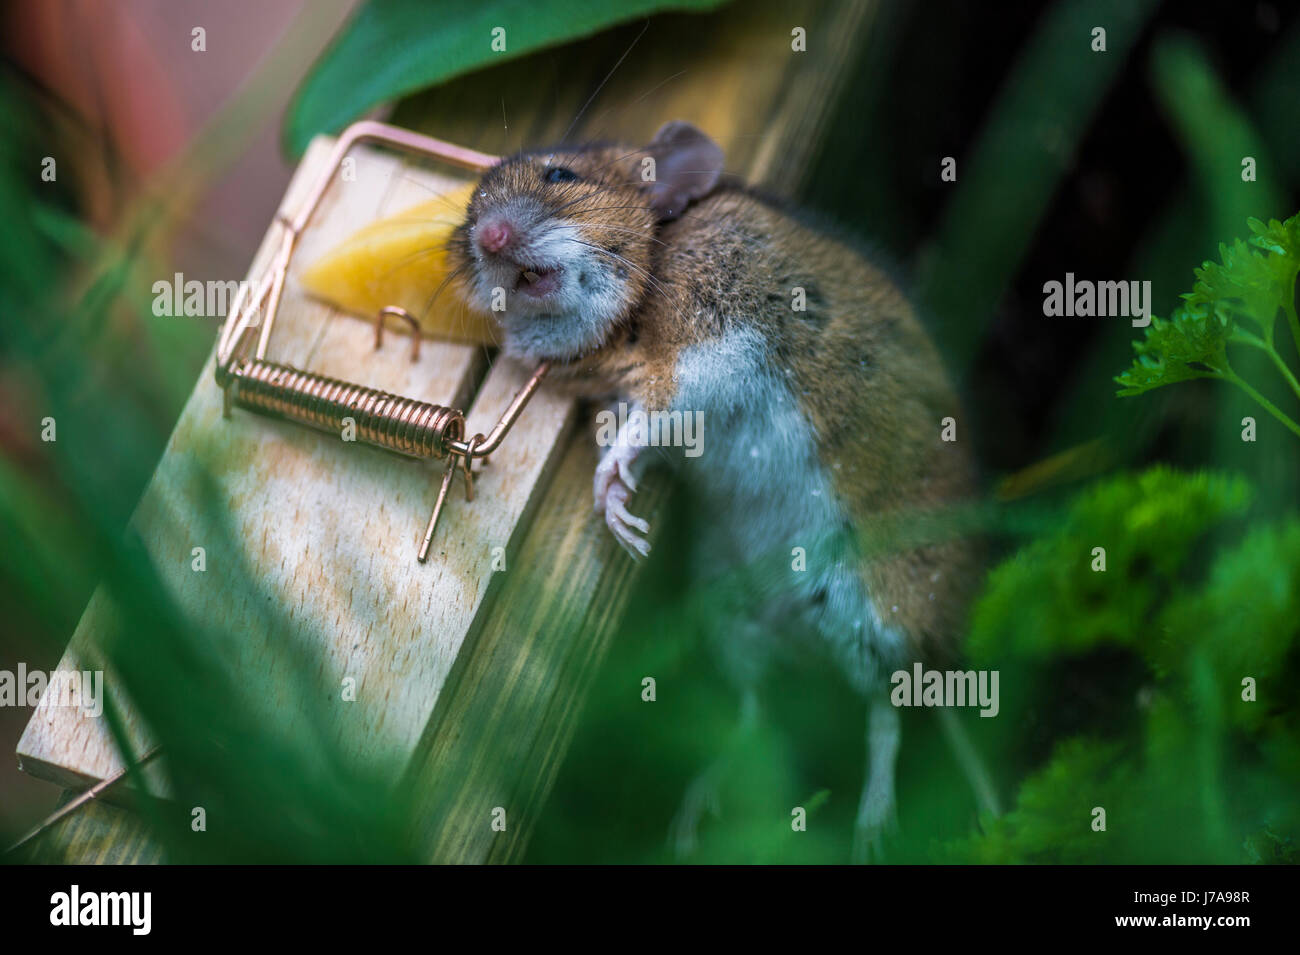 https://c8.alamy.com/comp/J7A98R/common-vole-caught-in-mousetrap-J7A98R.jpg